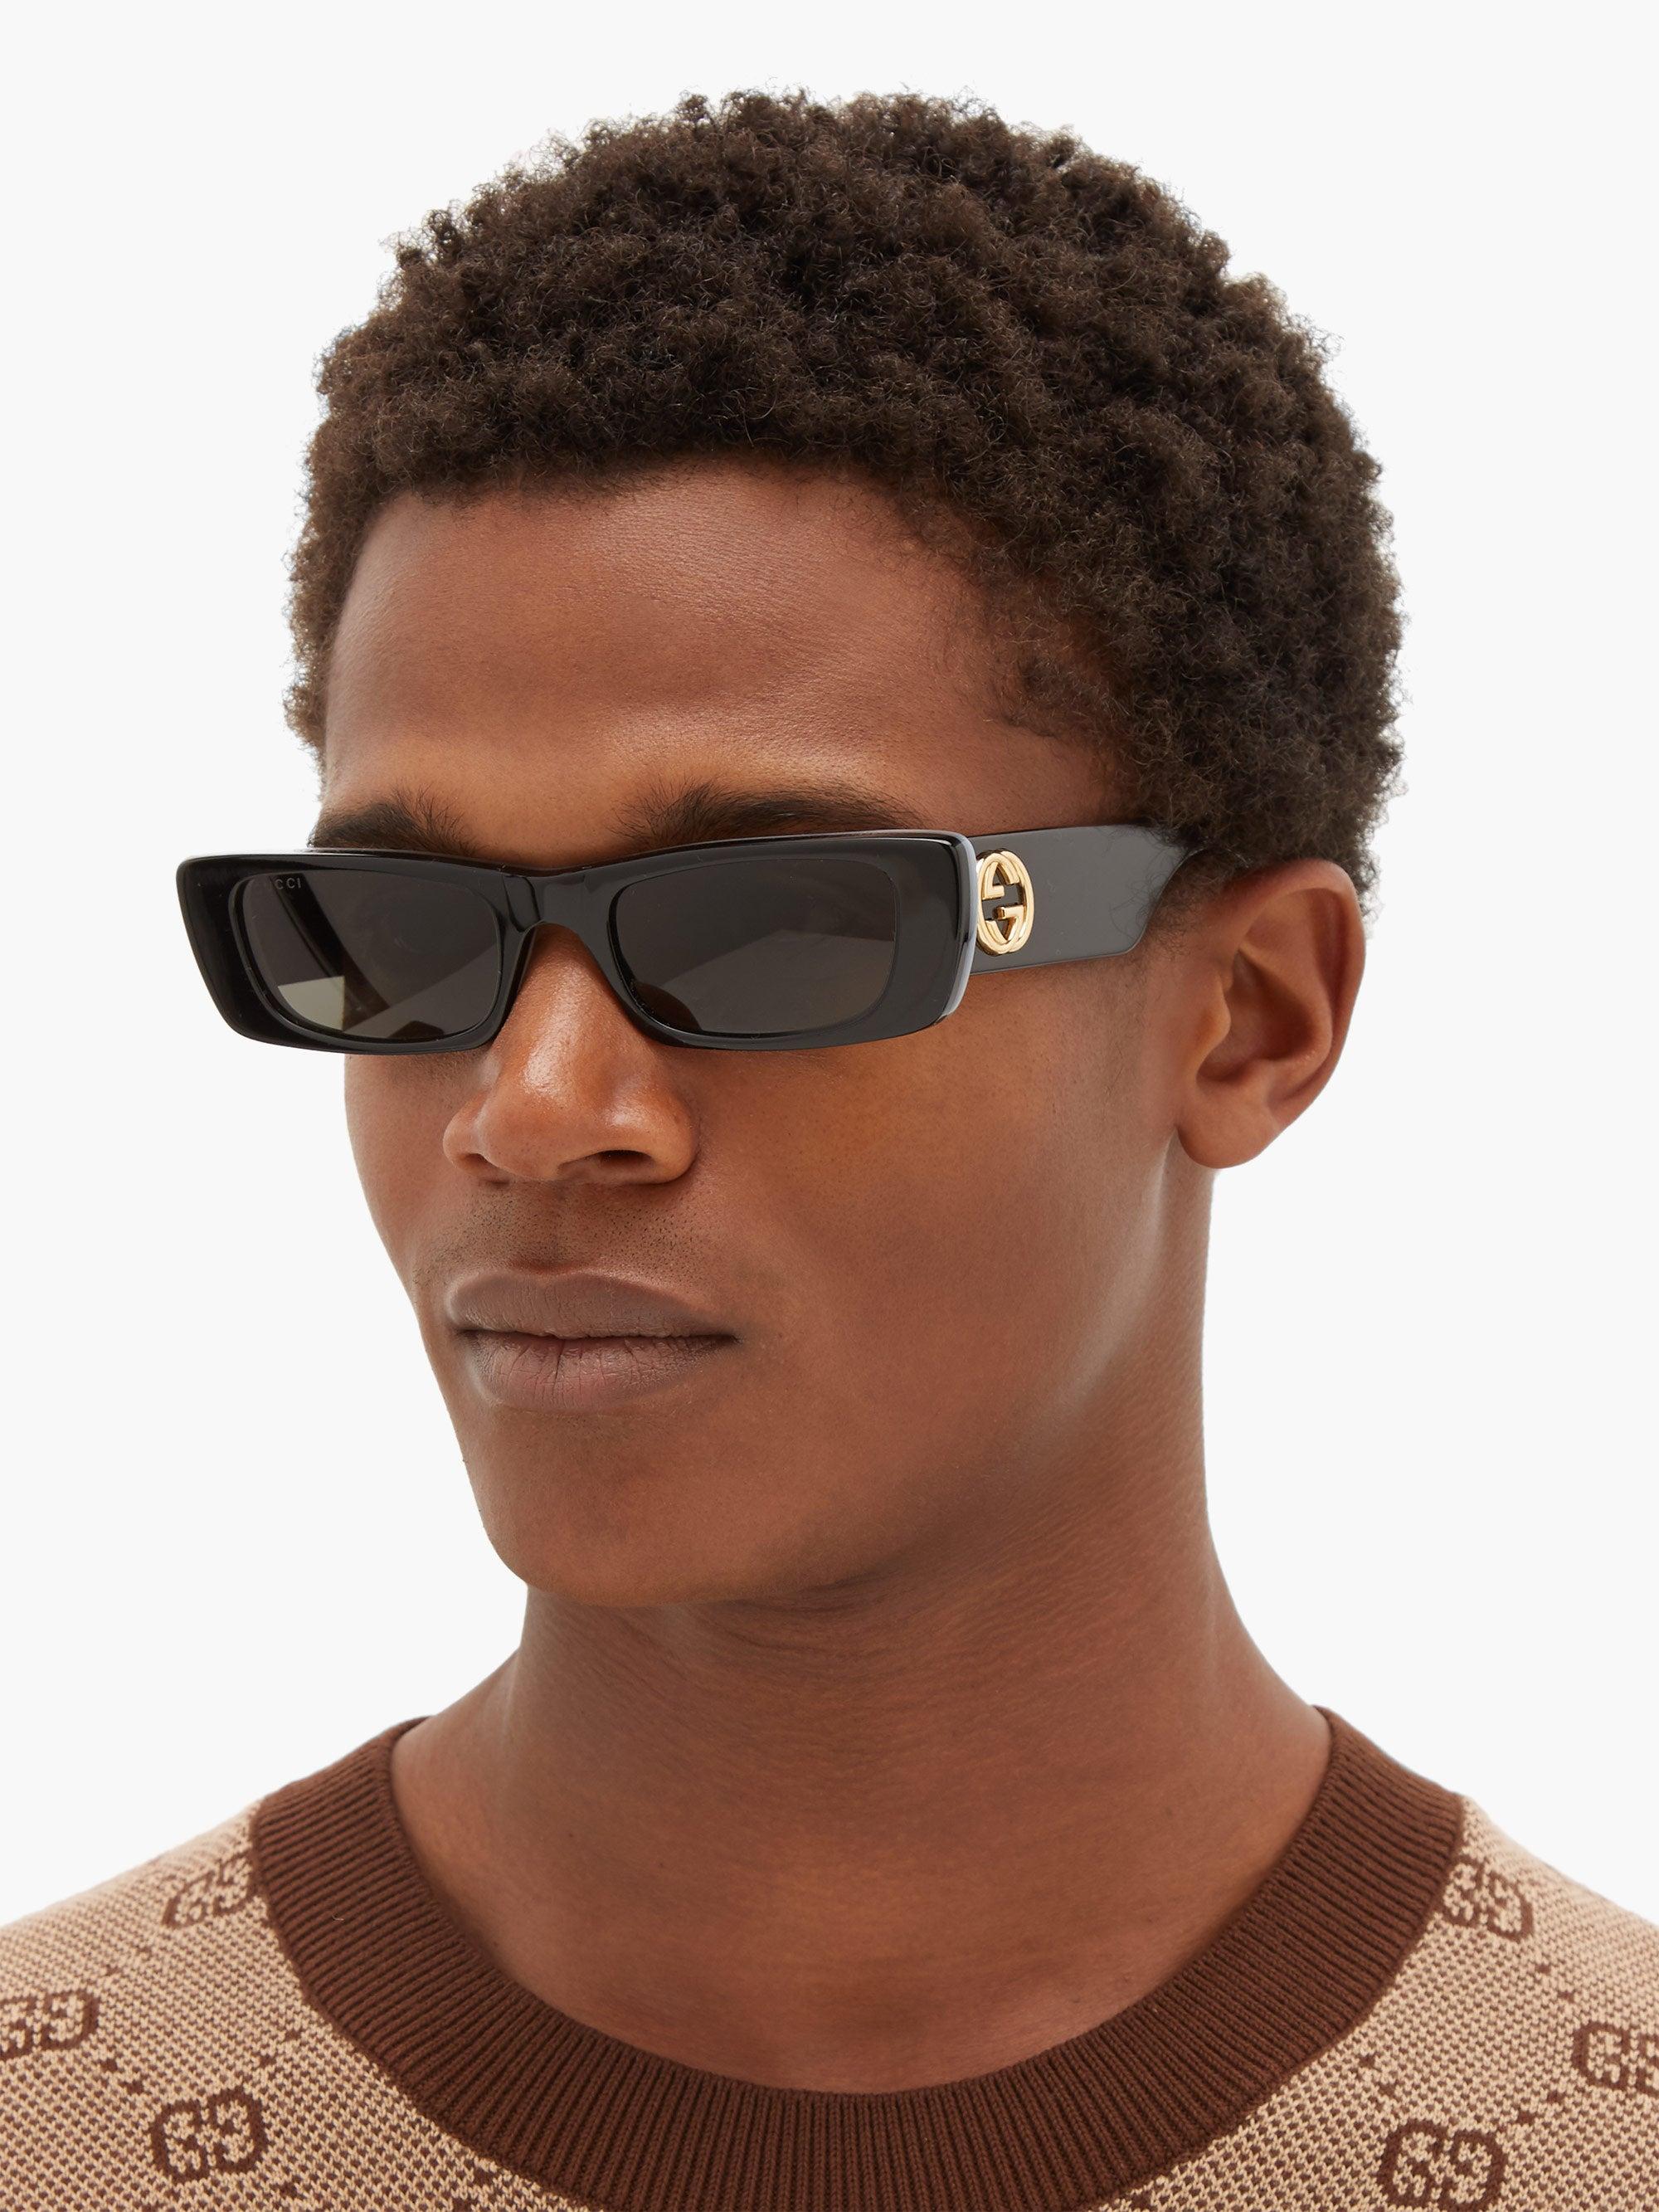 26550円 特別価格 GUCCI Rectangularframe Acetat Sunglasses